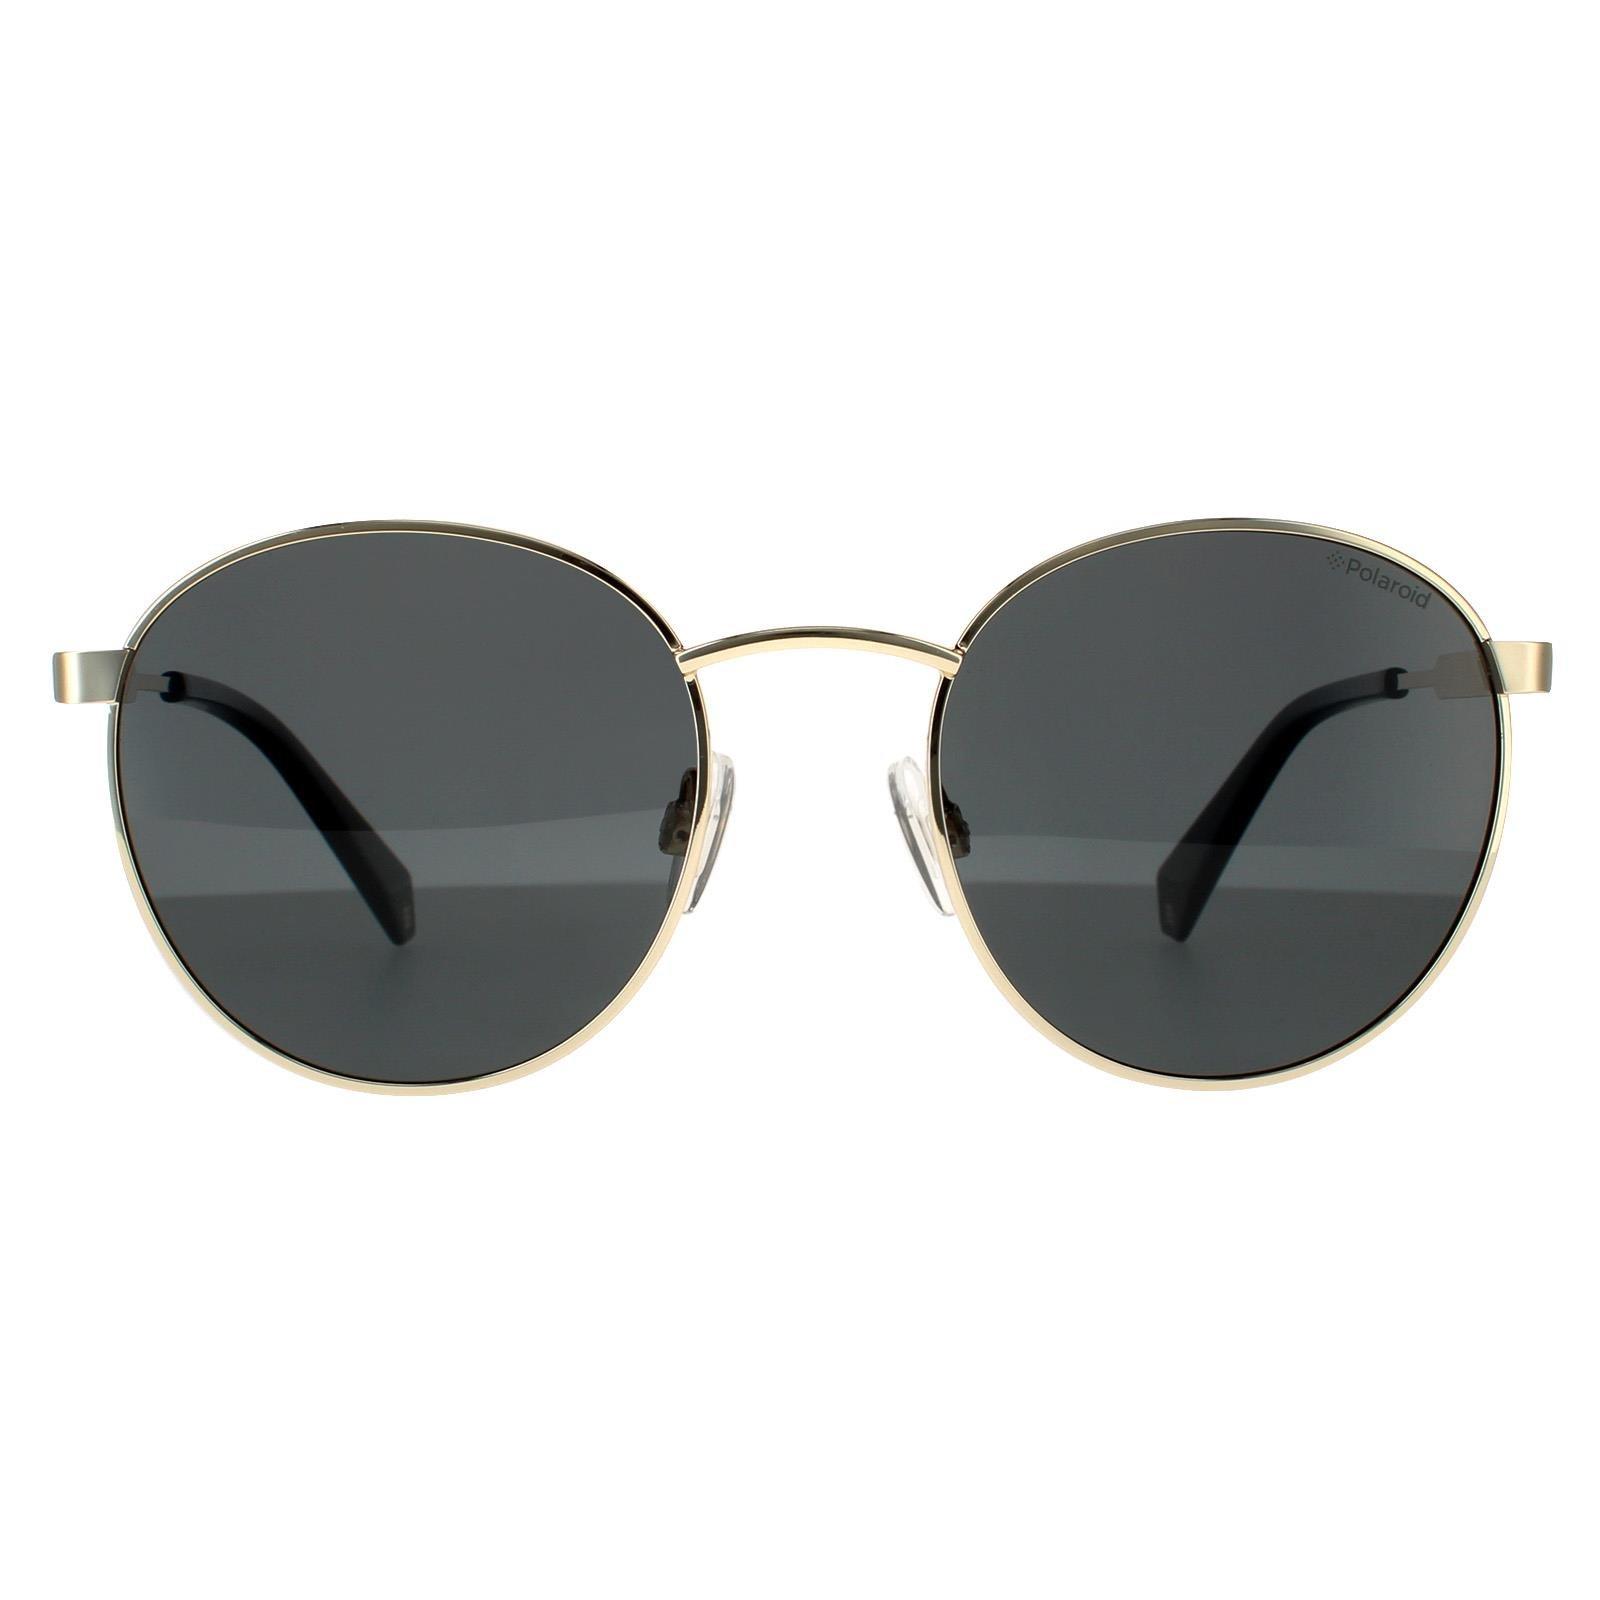 Круглые золотисто-серые серые поляризованные солнцезащитные очки Polaroid, золото polaroid pld 6190 s 1ed m9